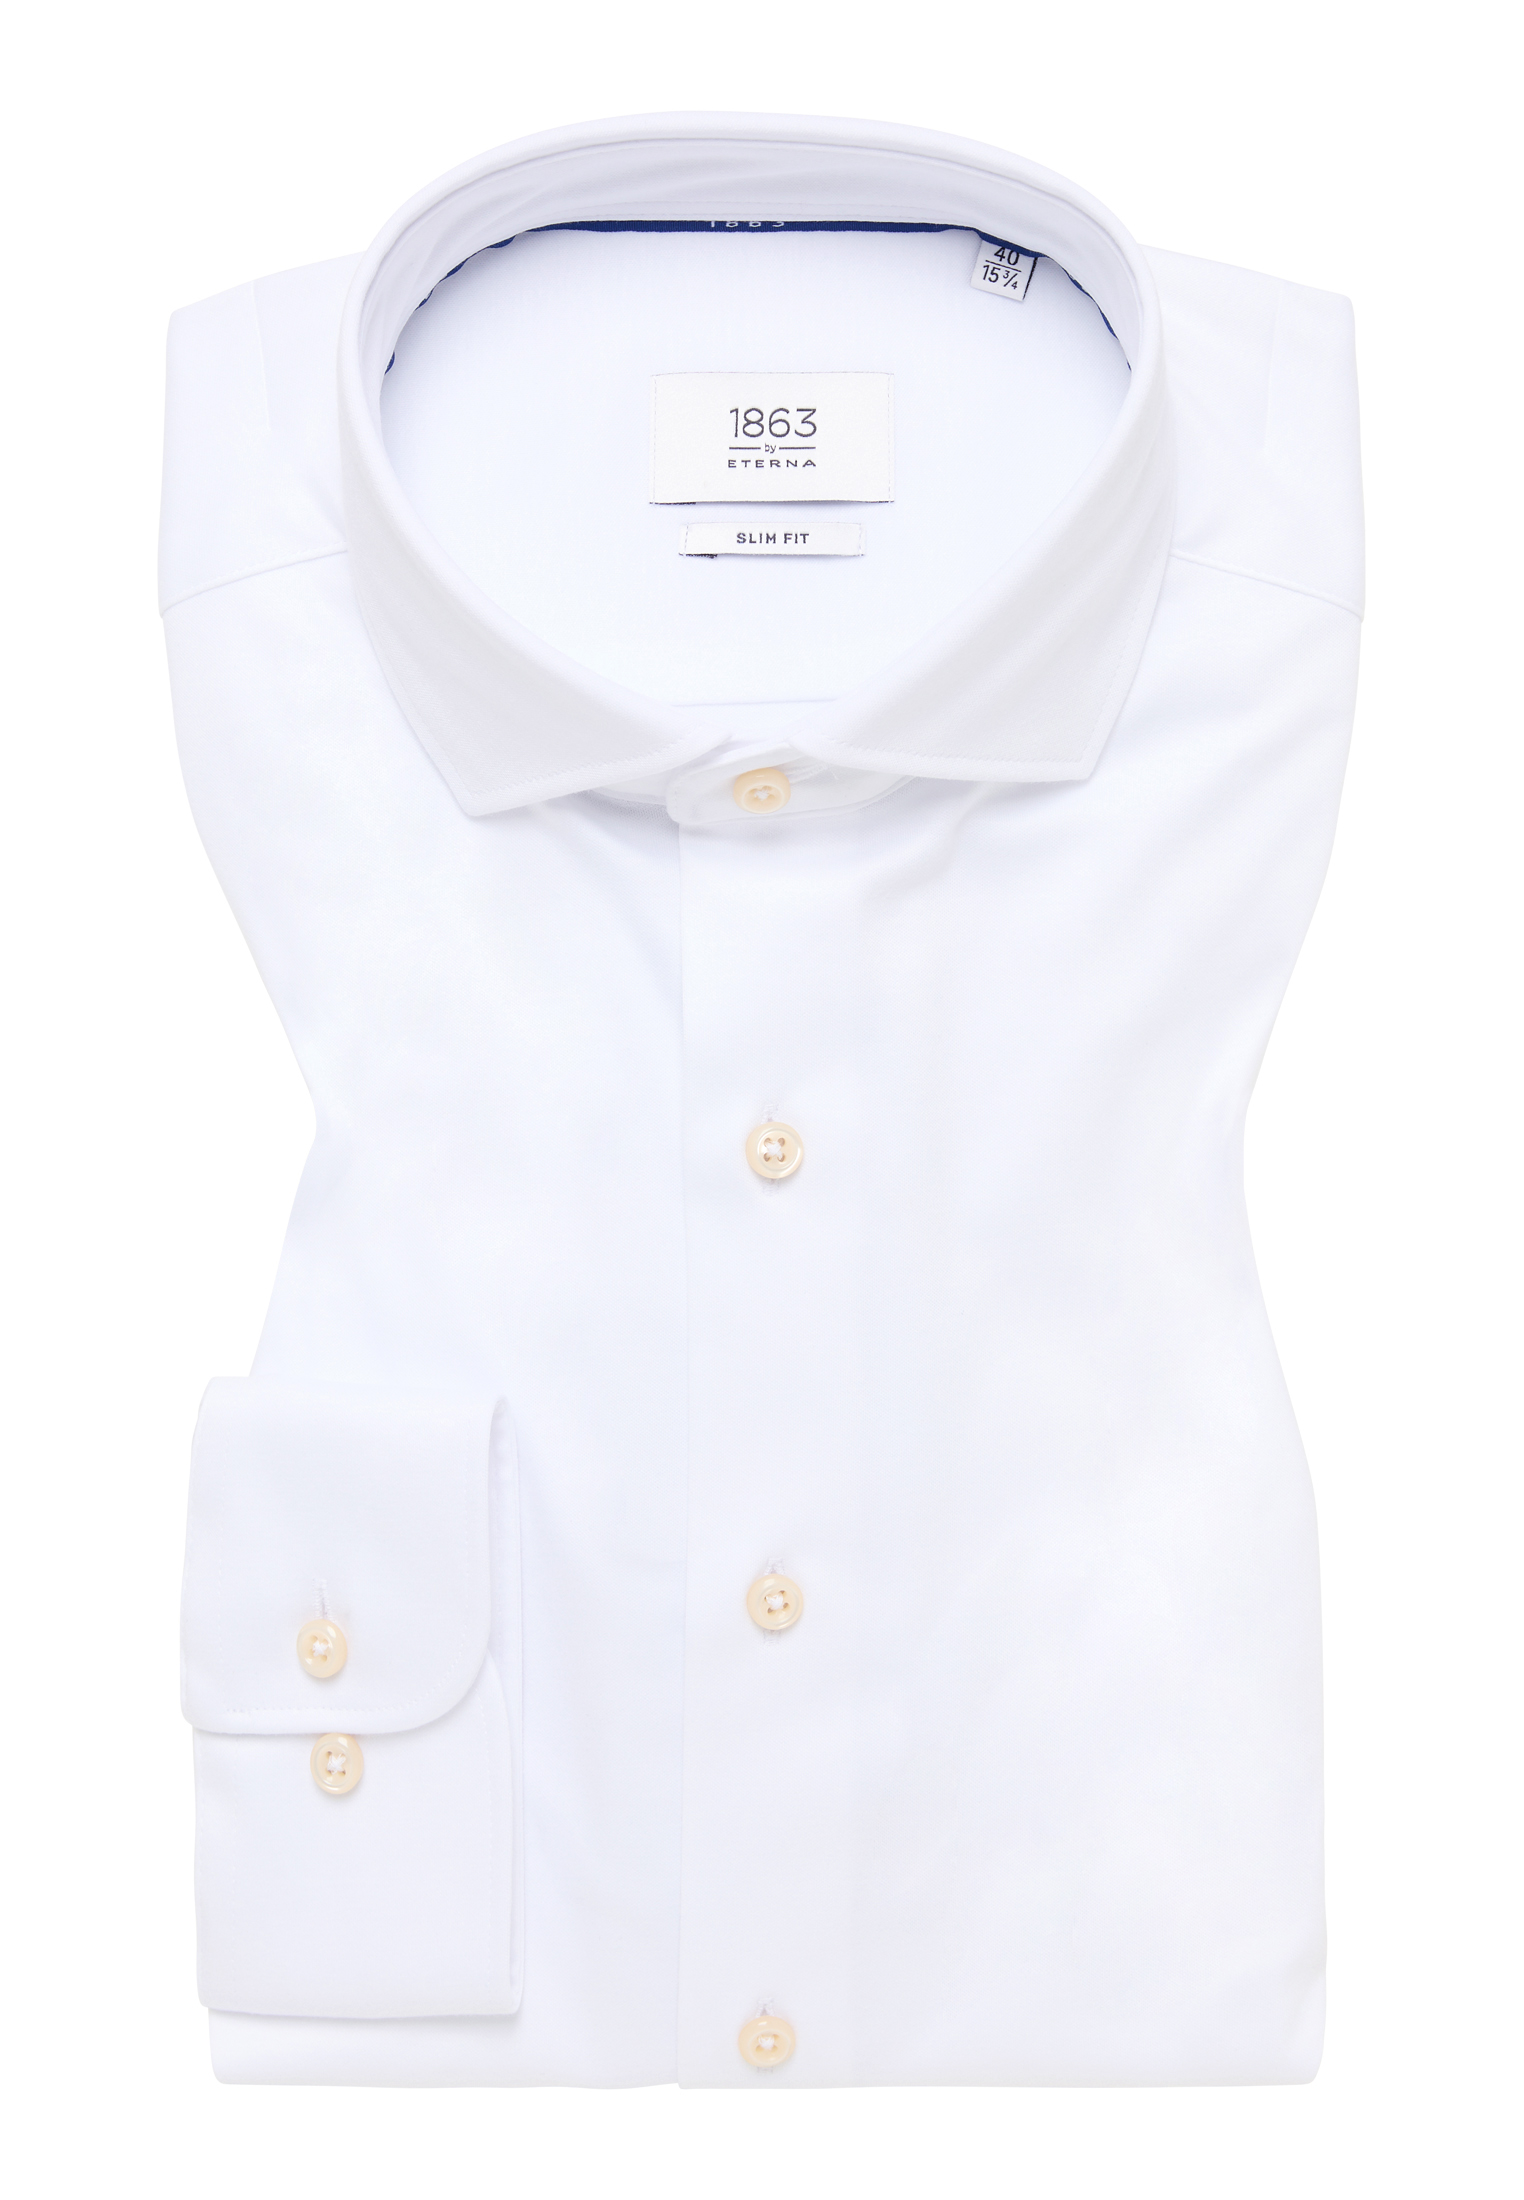 SLIM FIT Jersey Langarm | Shirt | | 40 1SH00378-00-01-40-1/1 unifarben | weiß weiß in